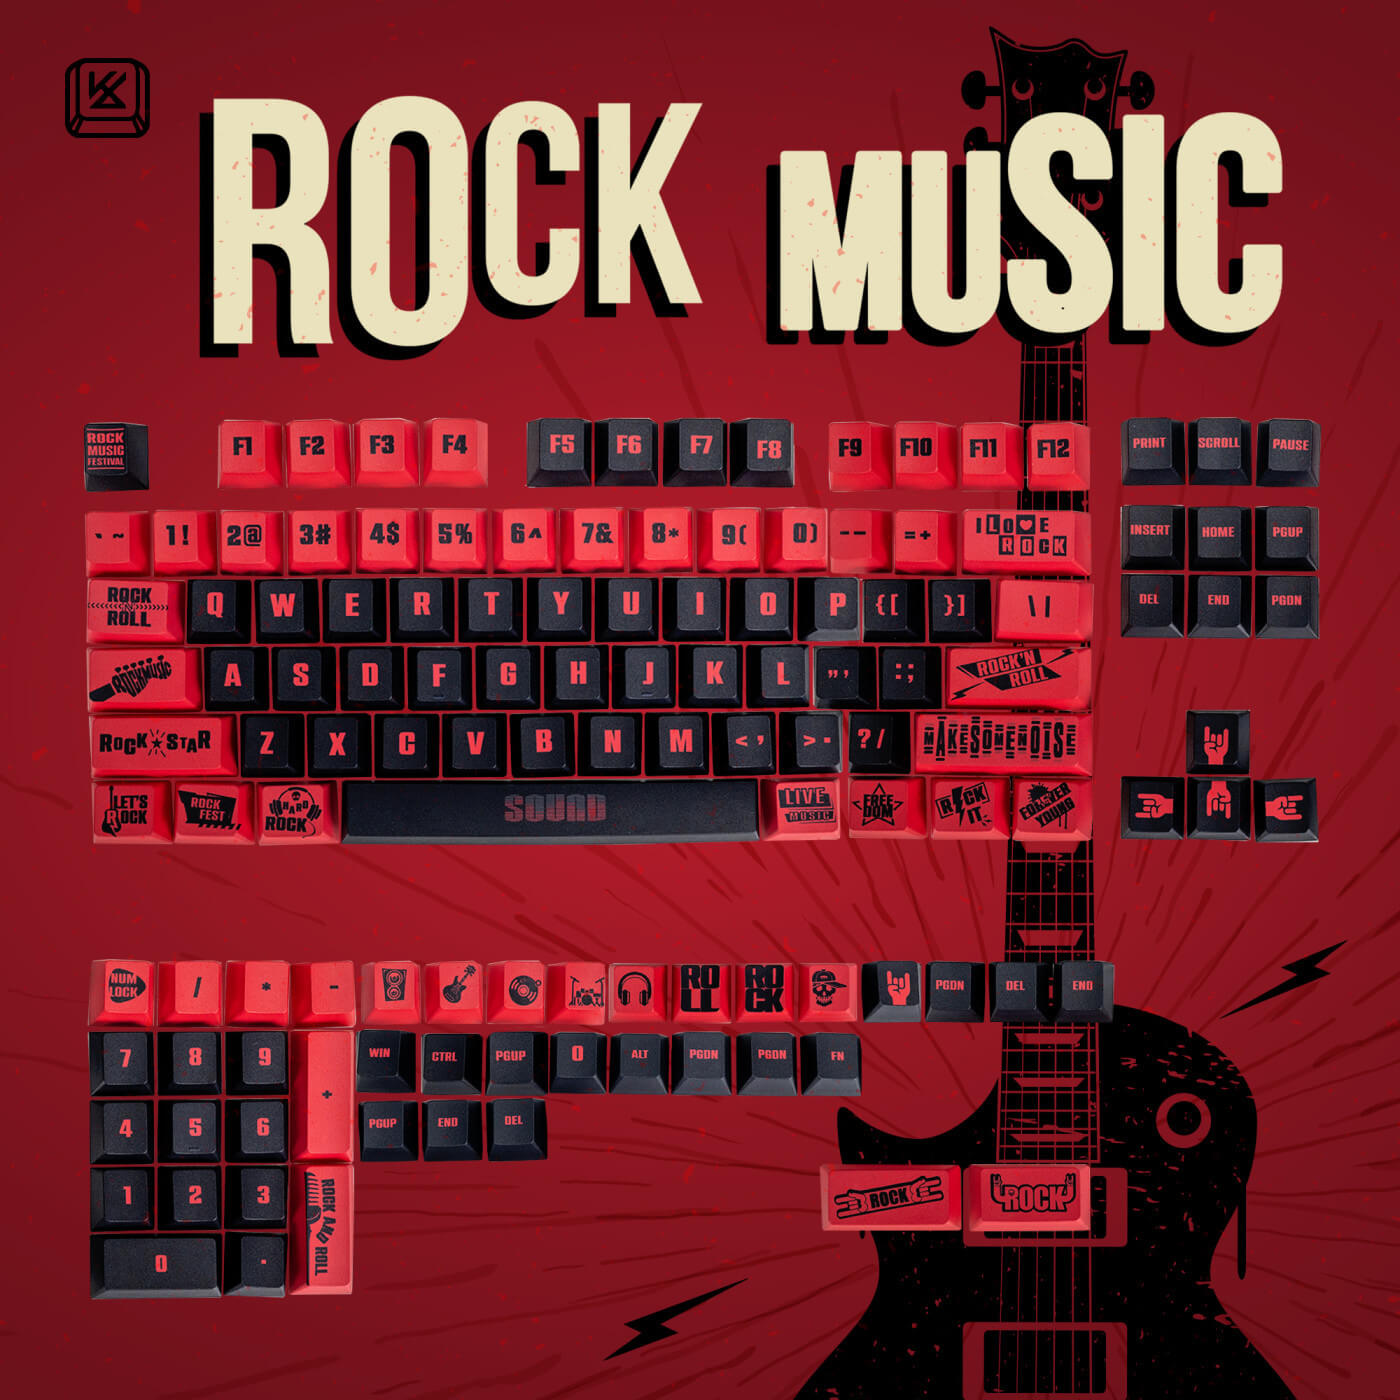 rock roll music keyboards